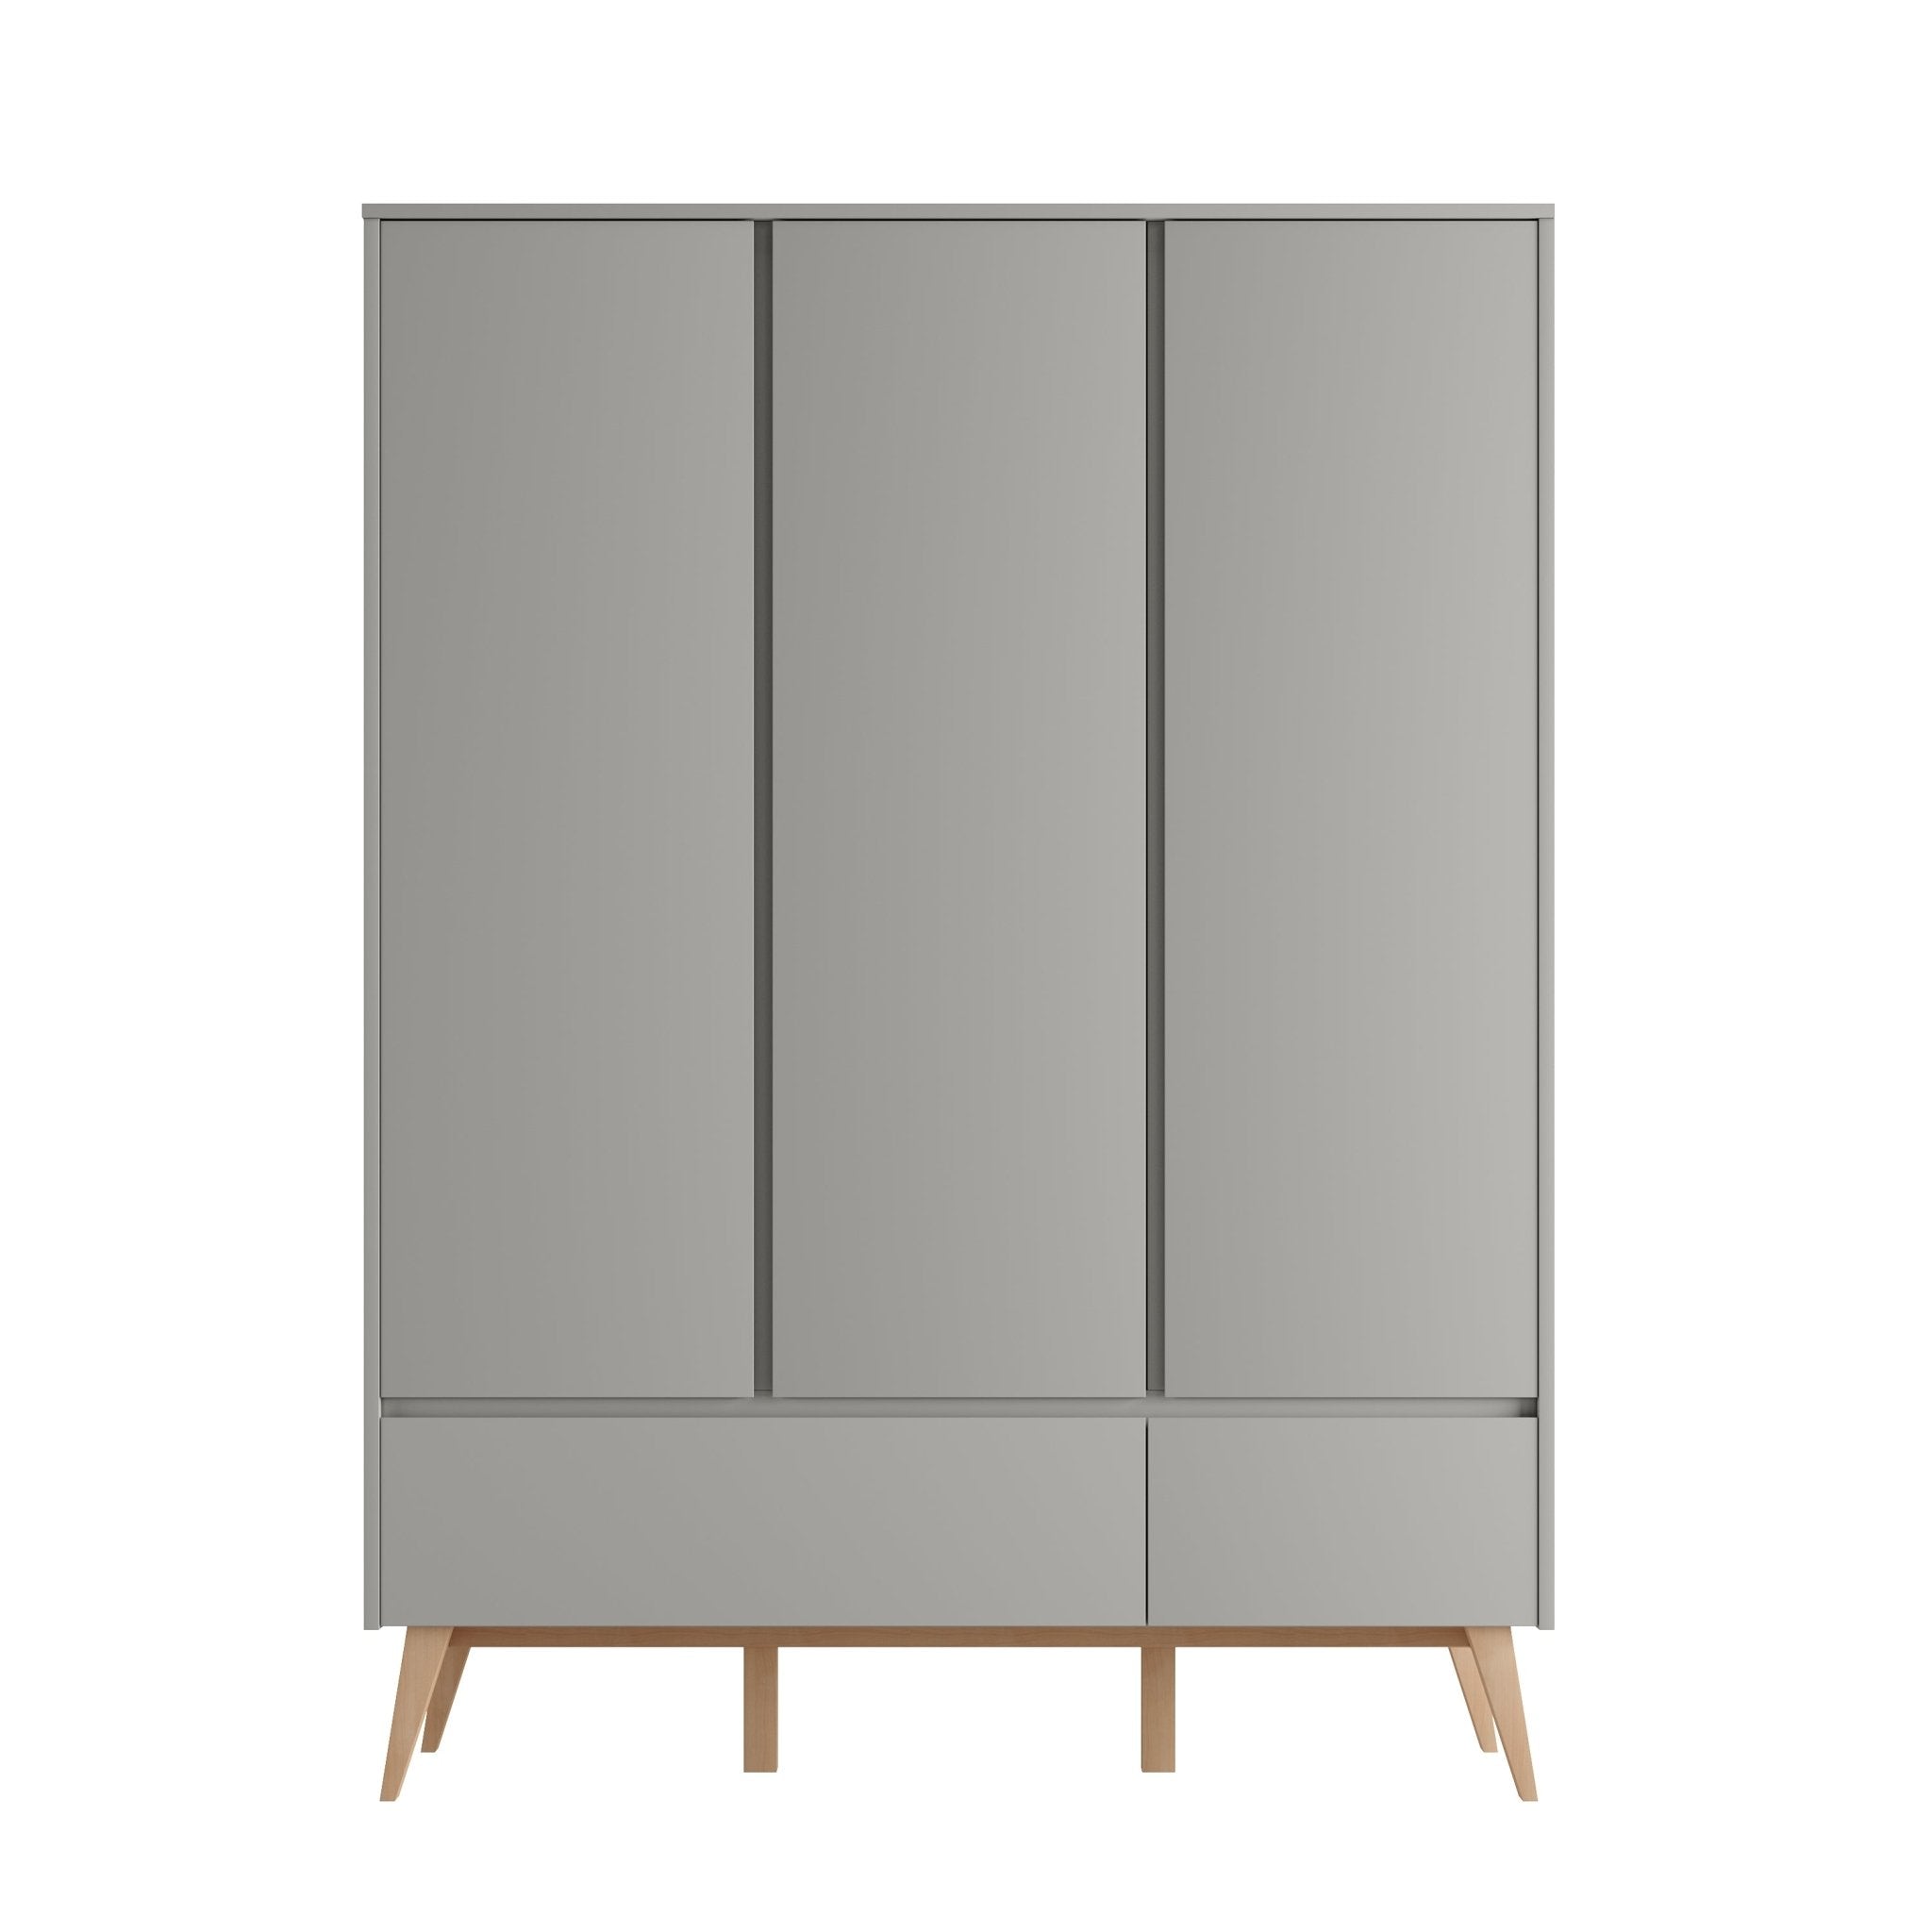 Saga 3-door wardrobe + 2 drawer wardrobe Grey color - Scandinavian Stories by Marton